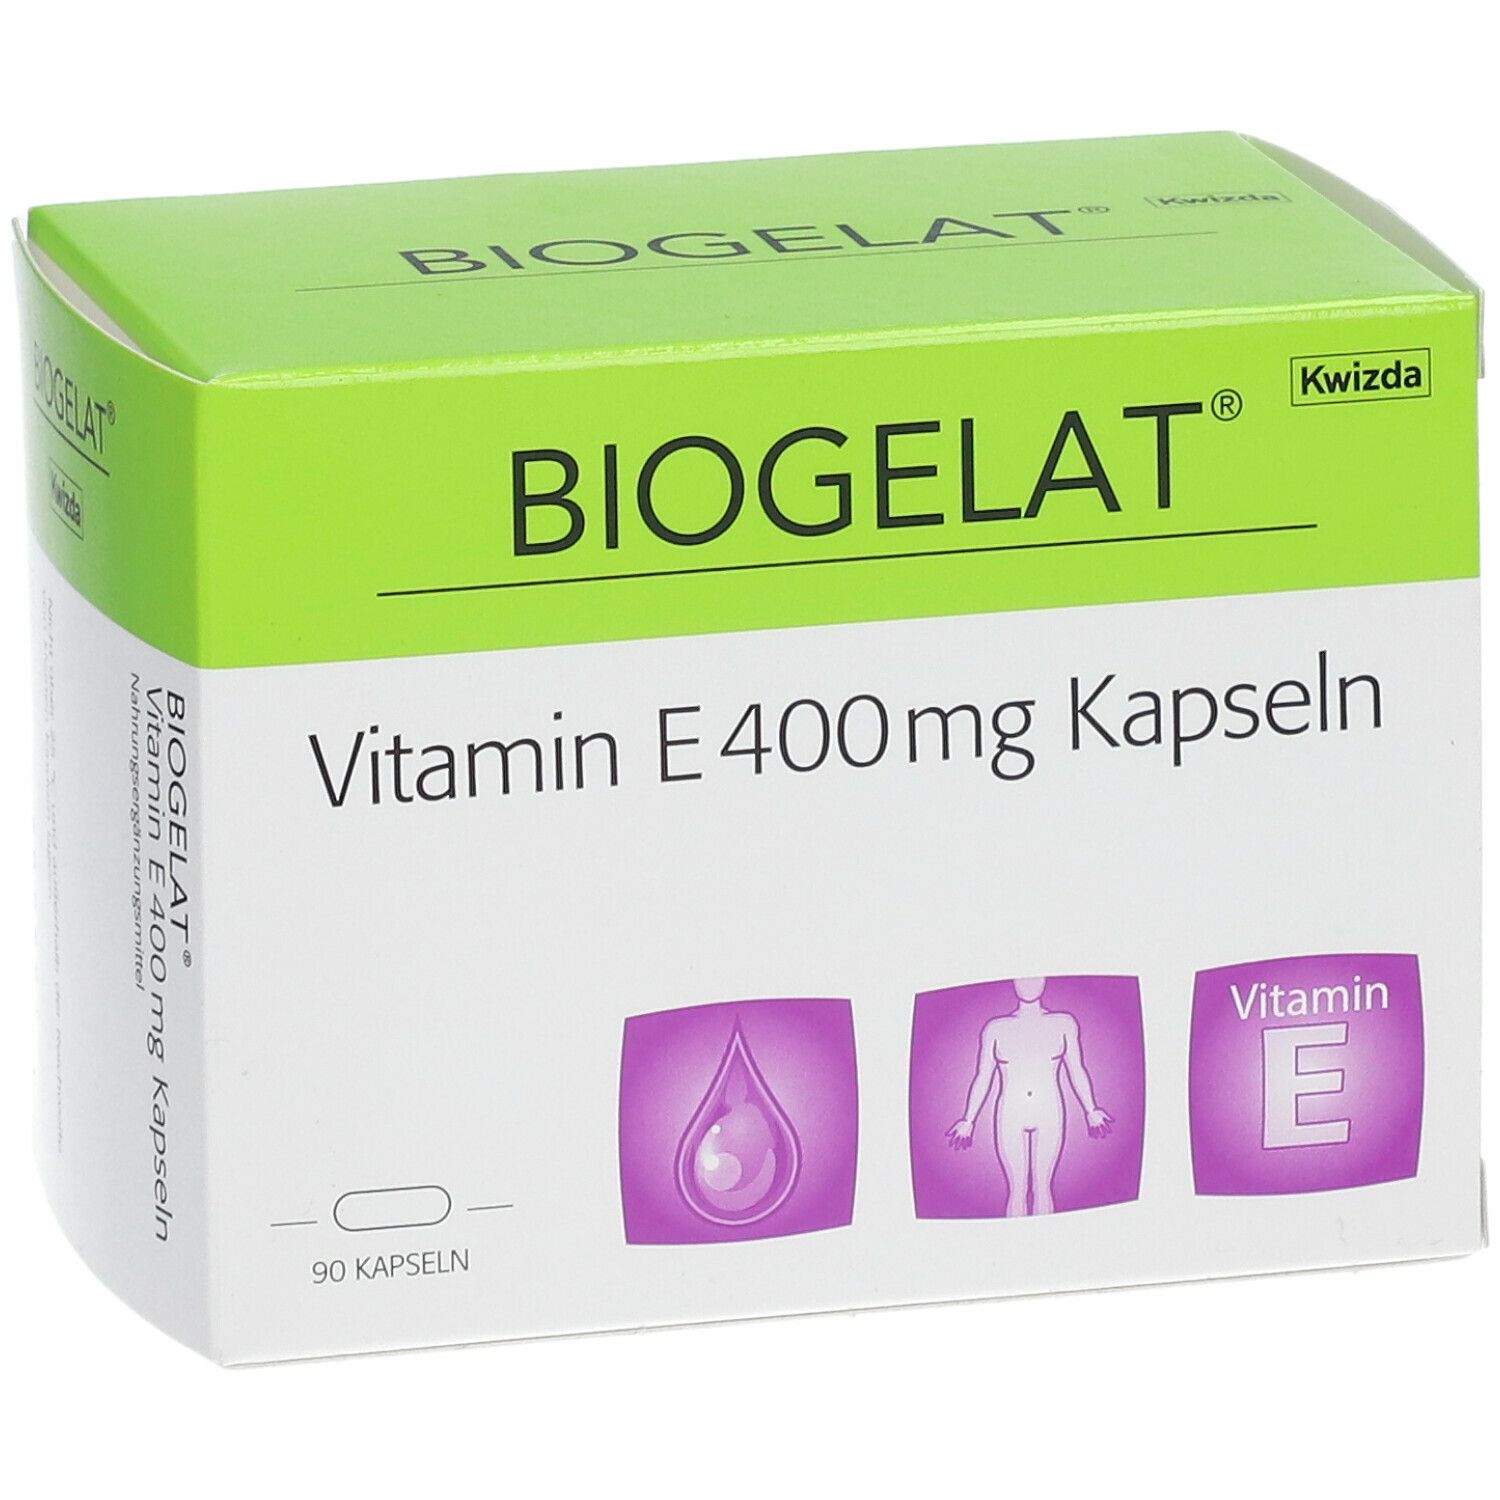 BIOGELAT® Vitamin E